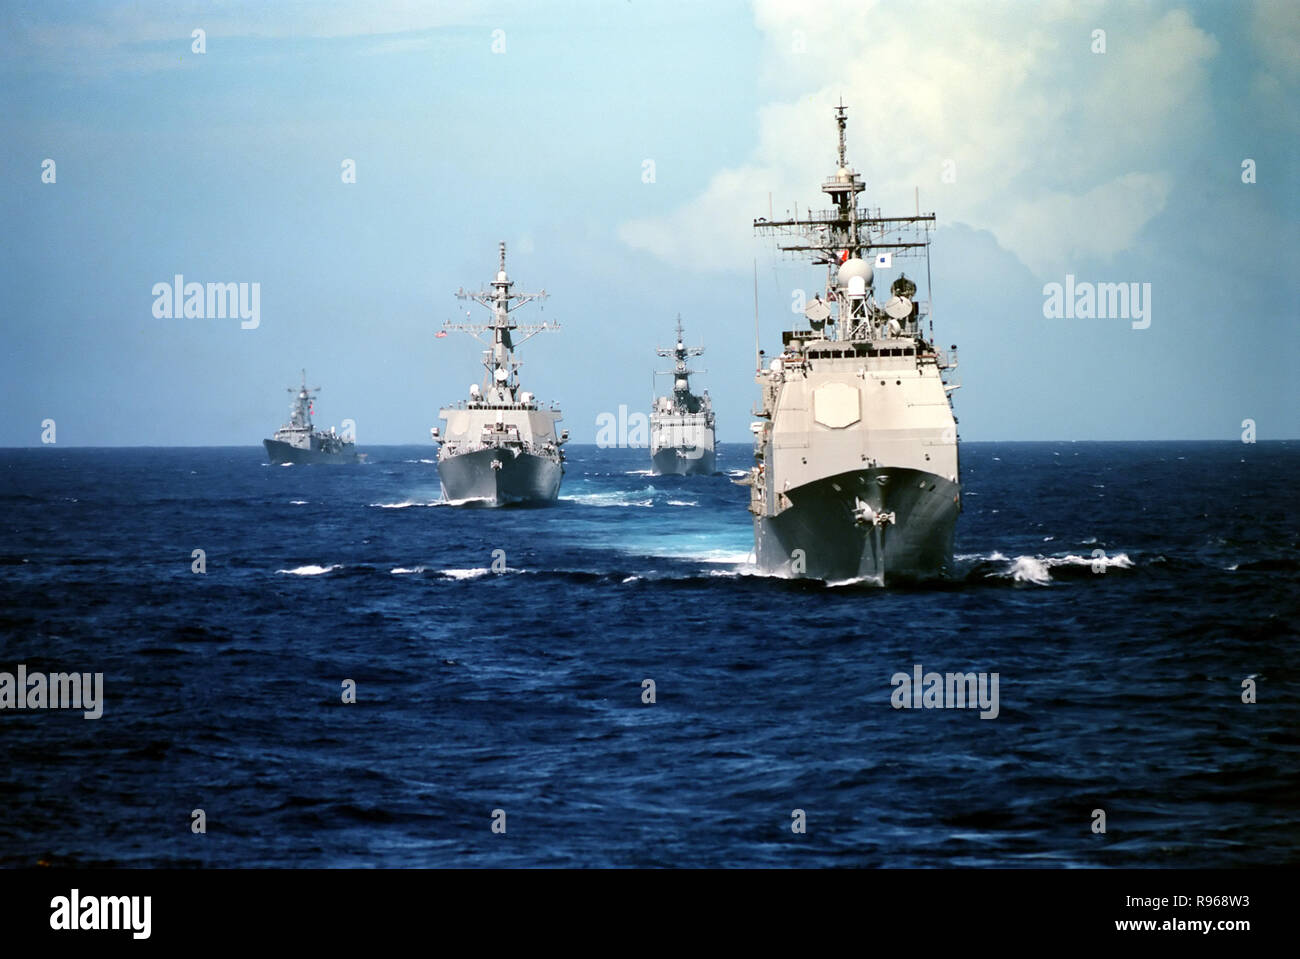 Die ticonderoga Klasse Lenkwaffen-kreuzer USS Vincennes (CG49) (rechts) dampft Vor drei anderen Klassen der U.S. Navy Schiffe. Nach Vincennes von rechts nach links sind die spruance Klasse Zerstörer USS John Cushing (TT 985), Arleigh Burke Klasse Lenkwaffen-zerstörer USS John S. McCain (DDG56), und die Oliver Hazard Perry klasse Lenkwaffenfregatte USS Gary (FFG 51). DoD Foto von Petty Officer 1st Class Wade McKinnon, U.S. Navy Stockfoto